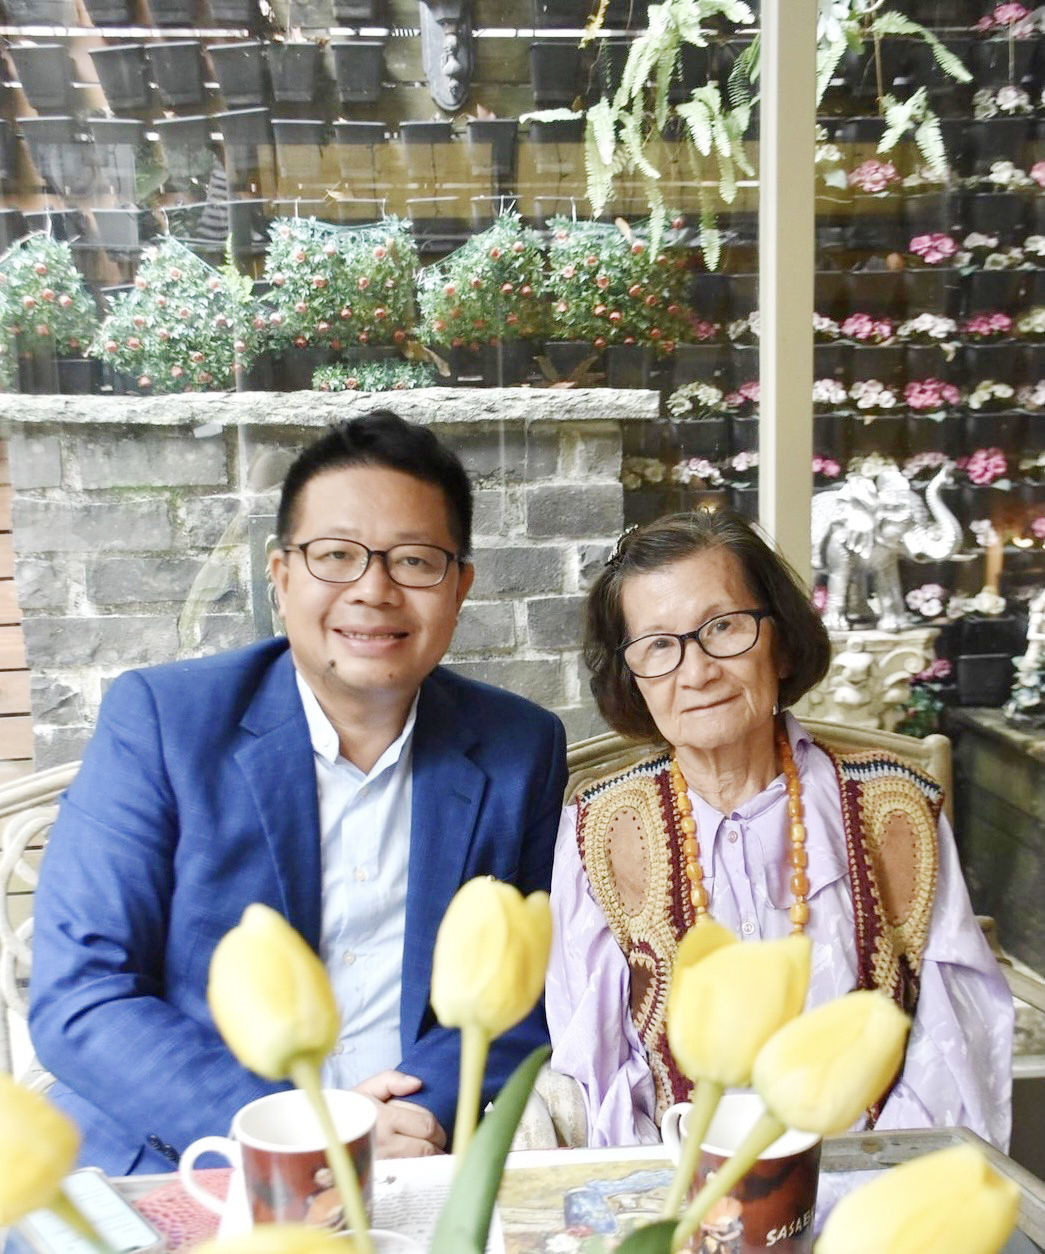 很 開 心 邀 請 到 遊 歷 過 八 十 多 個 國 家 的 立 犀 內 子 太 太 ( 右 ) 到 楊 三 郎 美 術 館 參 觀 及 分 享 她 的 人 生 故 事 ！ 傾 聽 與 陪 伴 是 我 們 可 以 持 續 學 習 的 功 課 ！ 